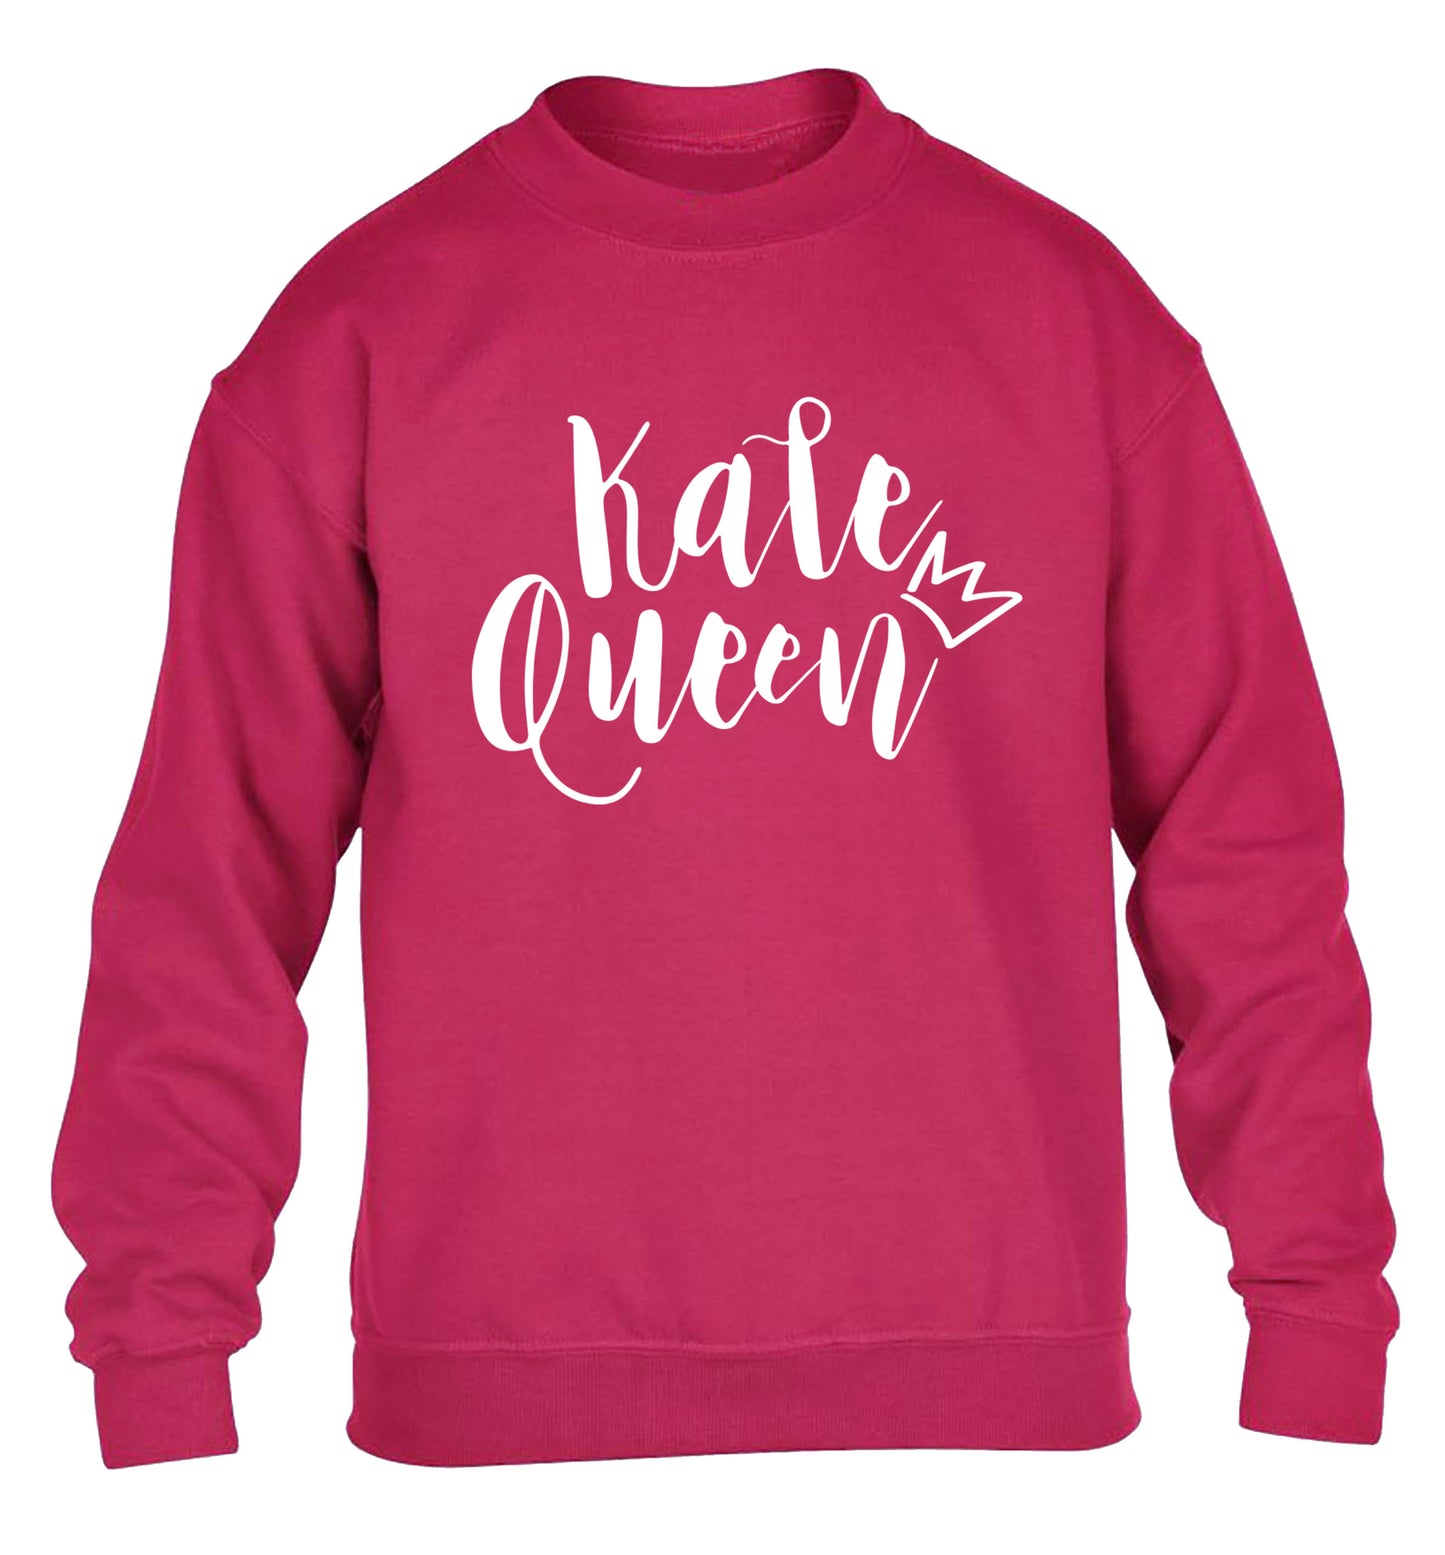 Kale Queen children's pink  sweater 12-14 Years